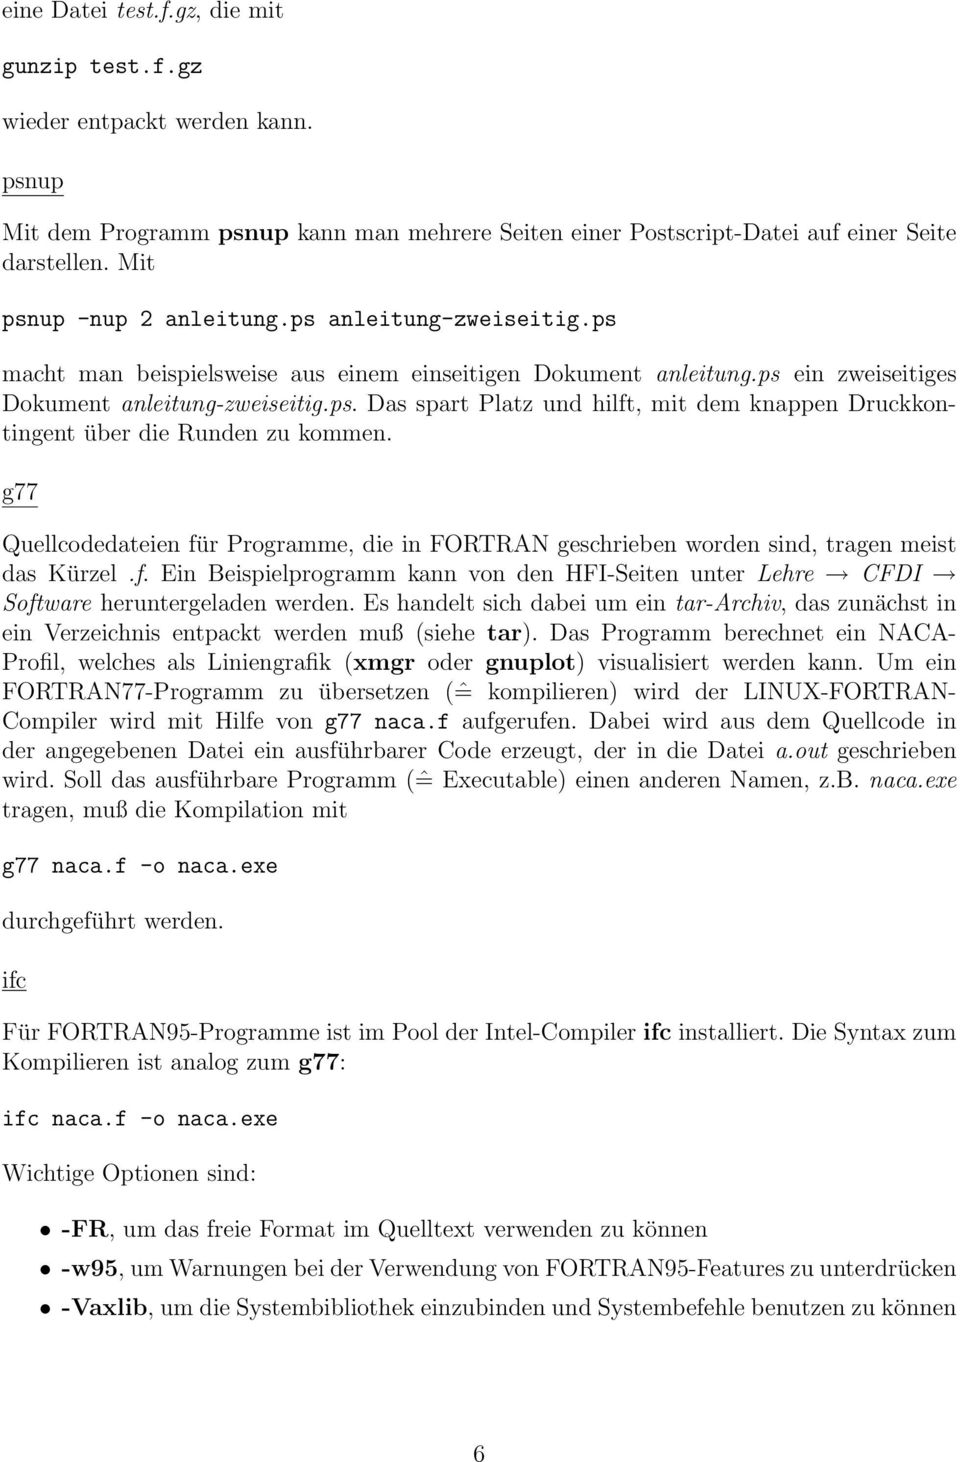 g77 Quellcodedateien für Programme, die in FORTRAN geschrieben worden sind, tragen meist das Kürzel.f. Ein Beispielprogramm kann von den HFI-Seiten unter Lehre CFDI Software heruntergeladen werden.